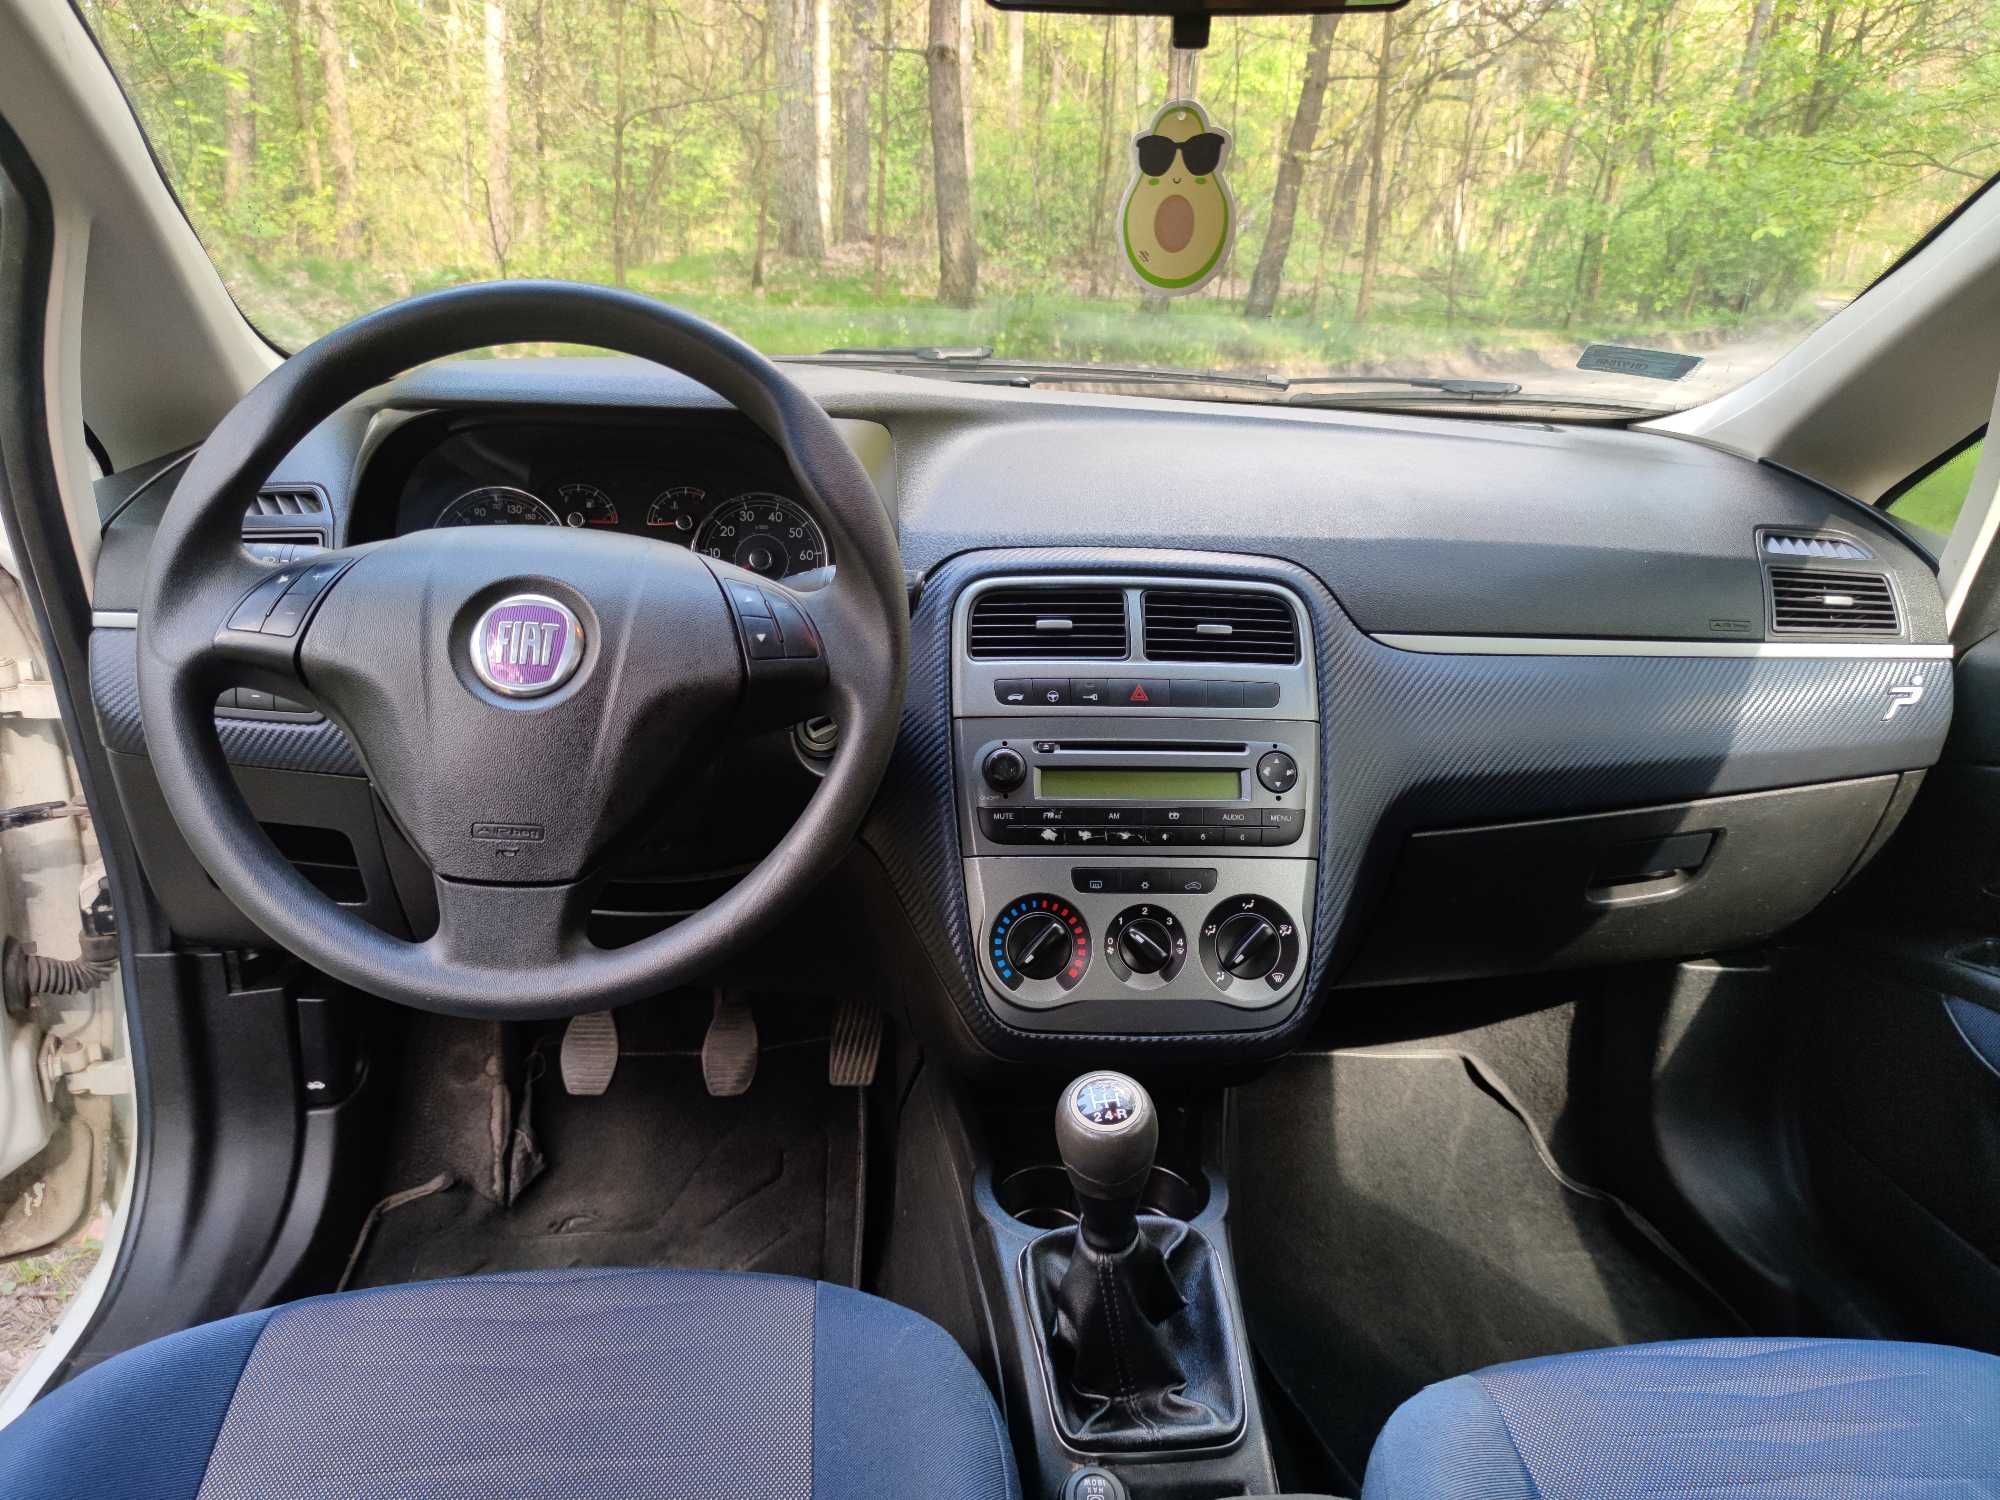 Fiat Grande Punto 1,3 cm3, diesel, ekonomiczny, klimatyzacja